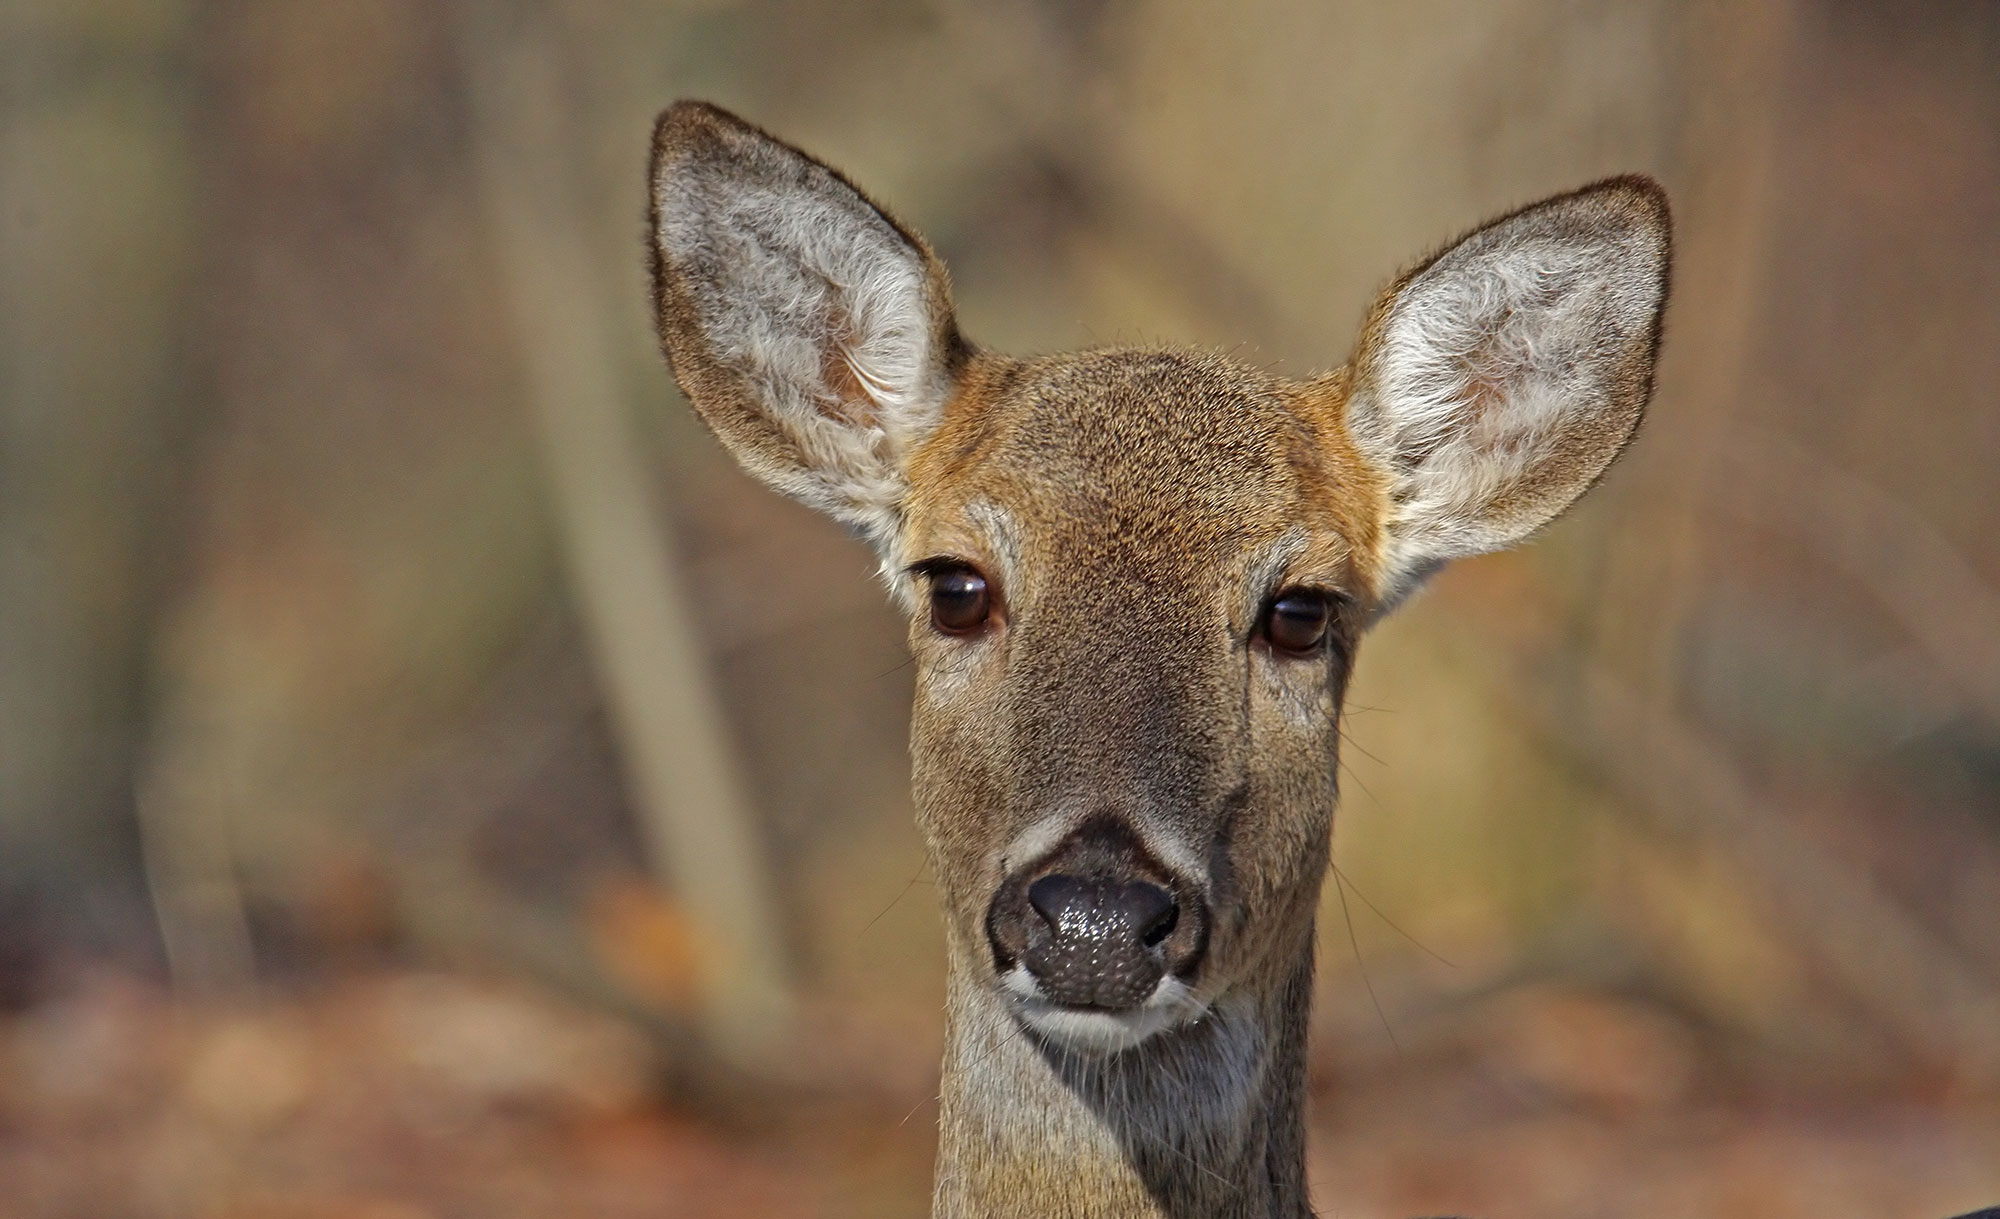 Close-up of a deer's face.